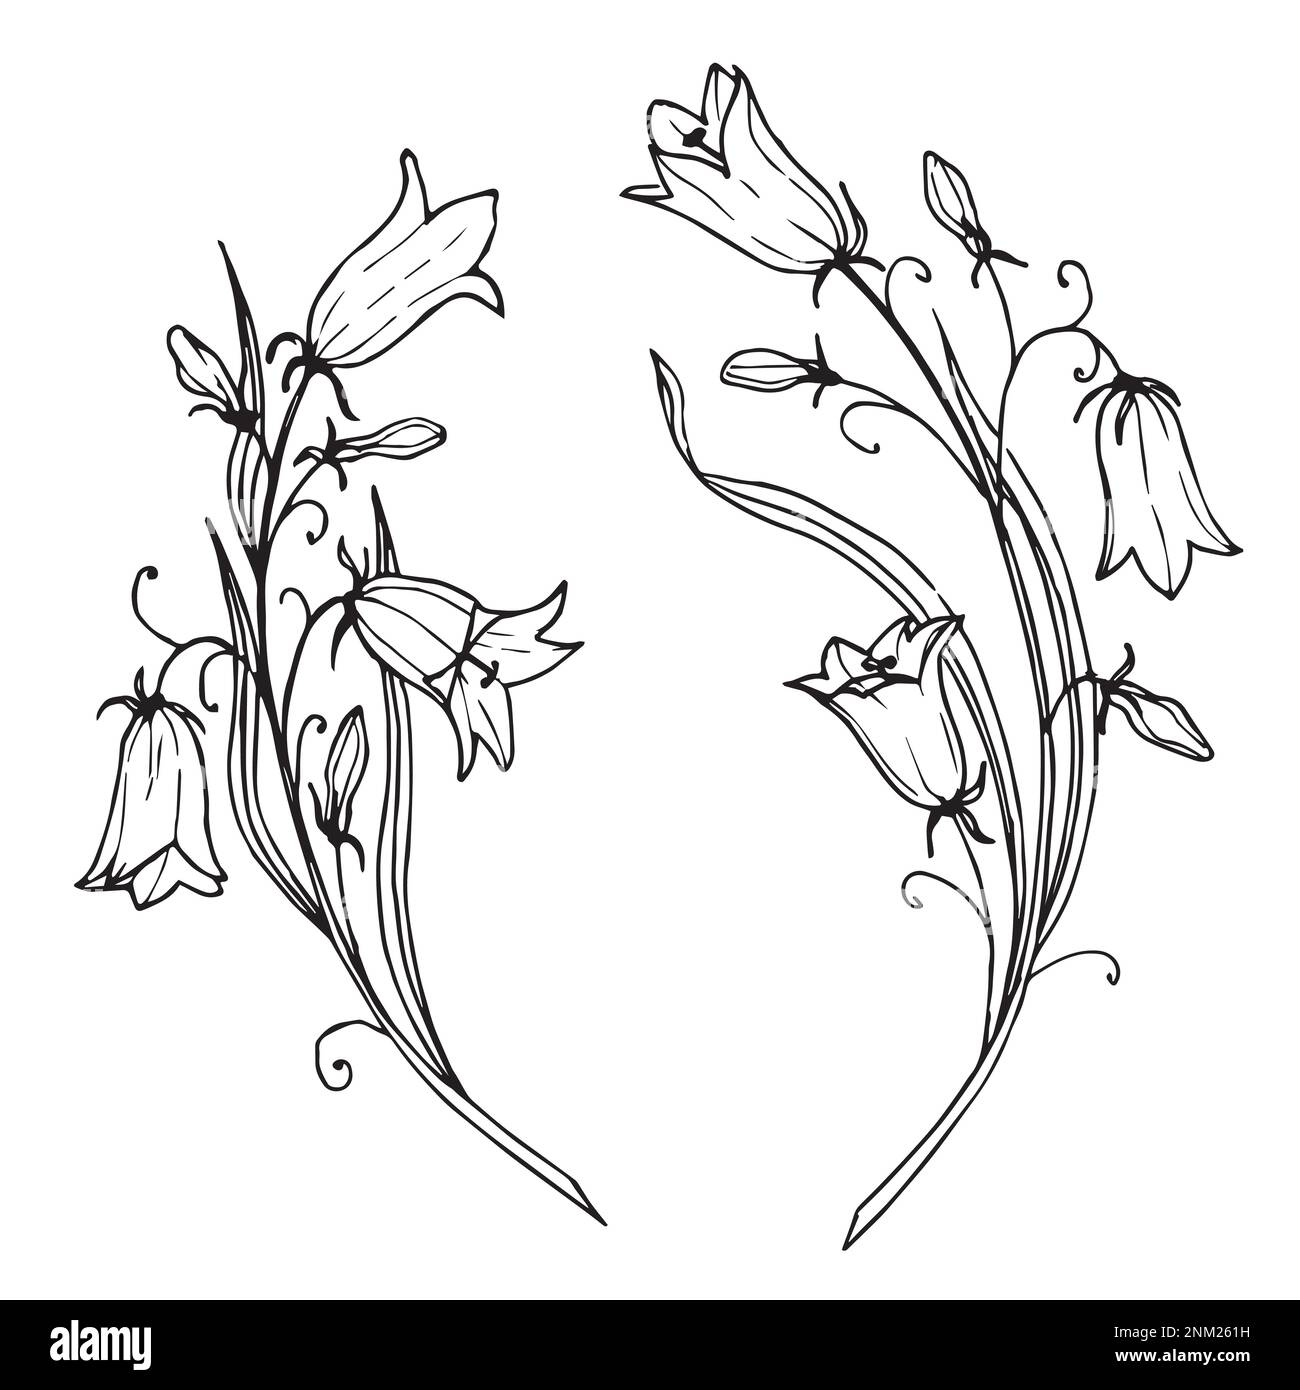 Disegno vettoriale Bellflower. Illustrazione disegnata a mano di Bluebell Flower in stile contorno su sfondo isolato. Disegno floreale in bianco in nero. Incisione per inviti di nozze. Illustrazione Vettoriale